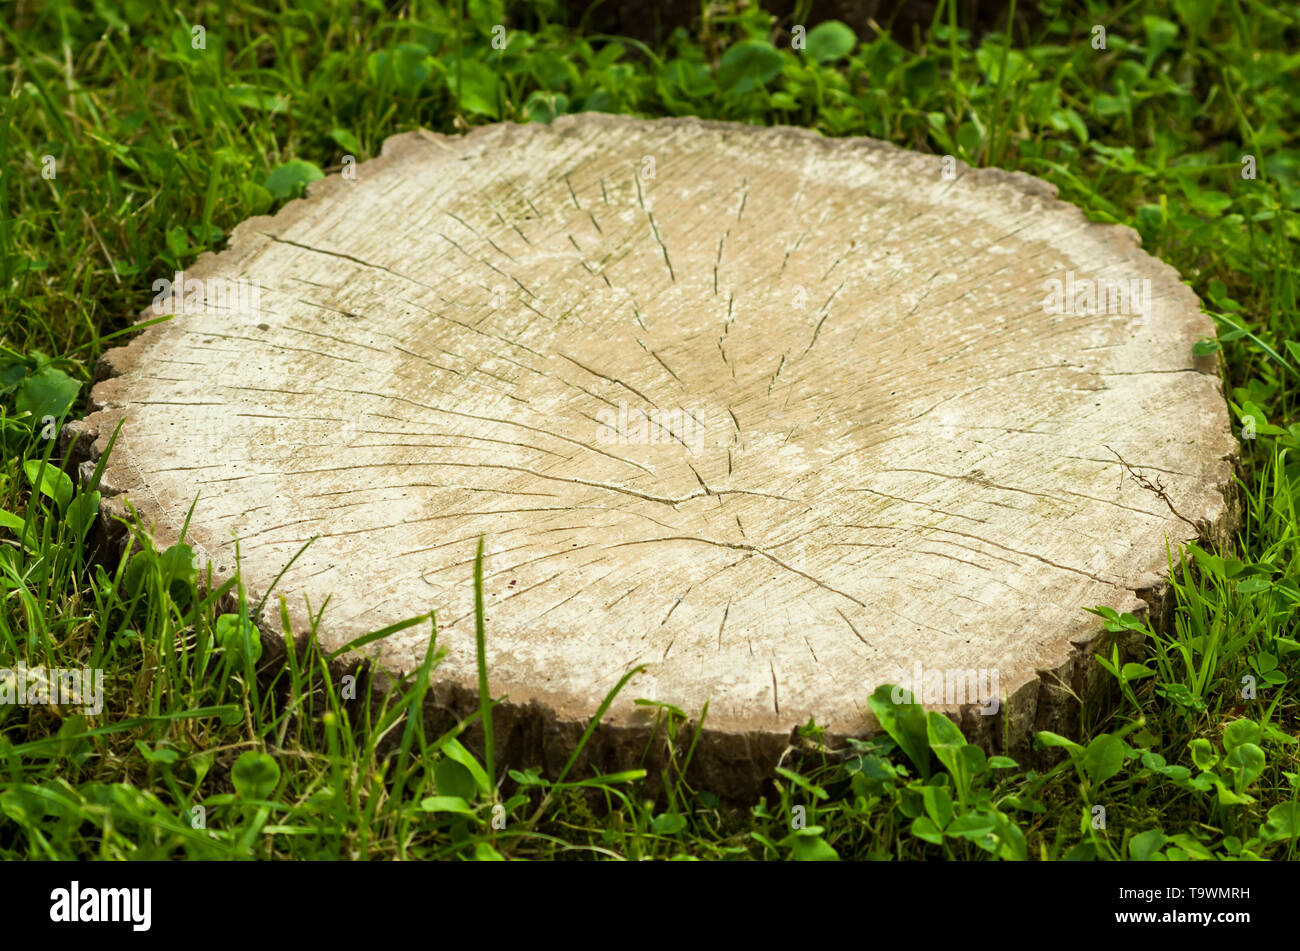 Cutted nut Stumpf von grünem Rasen umgeben. Irgendwo in Transkarpatien region, Polen. Stockfoto